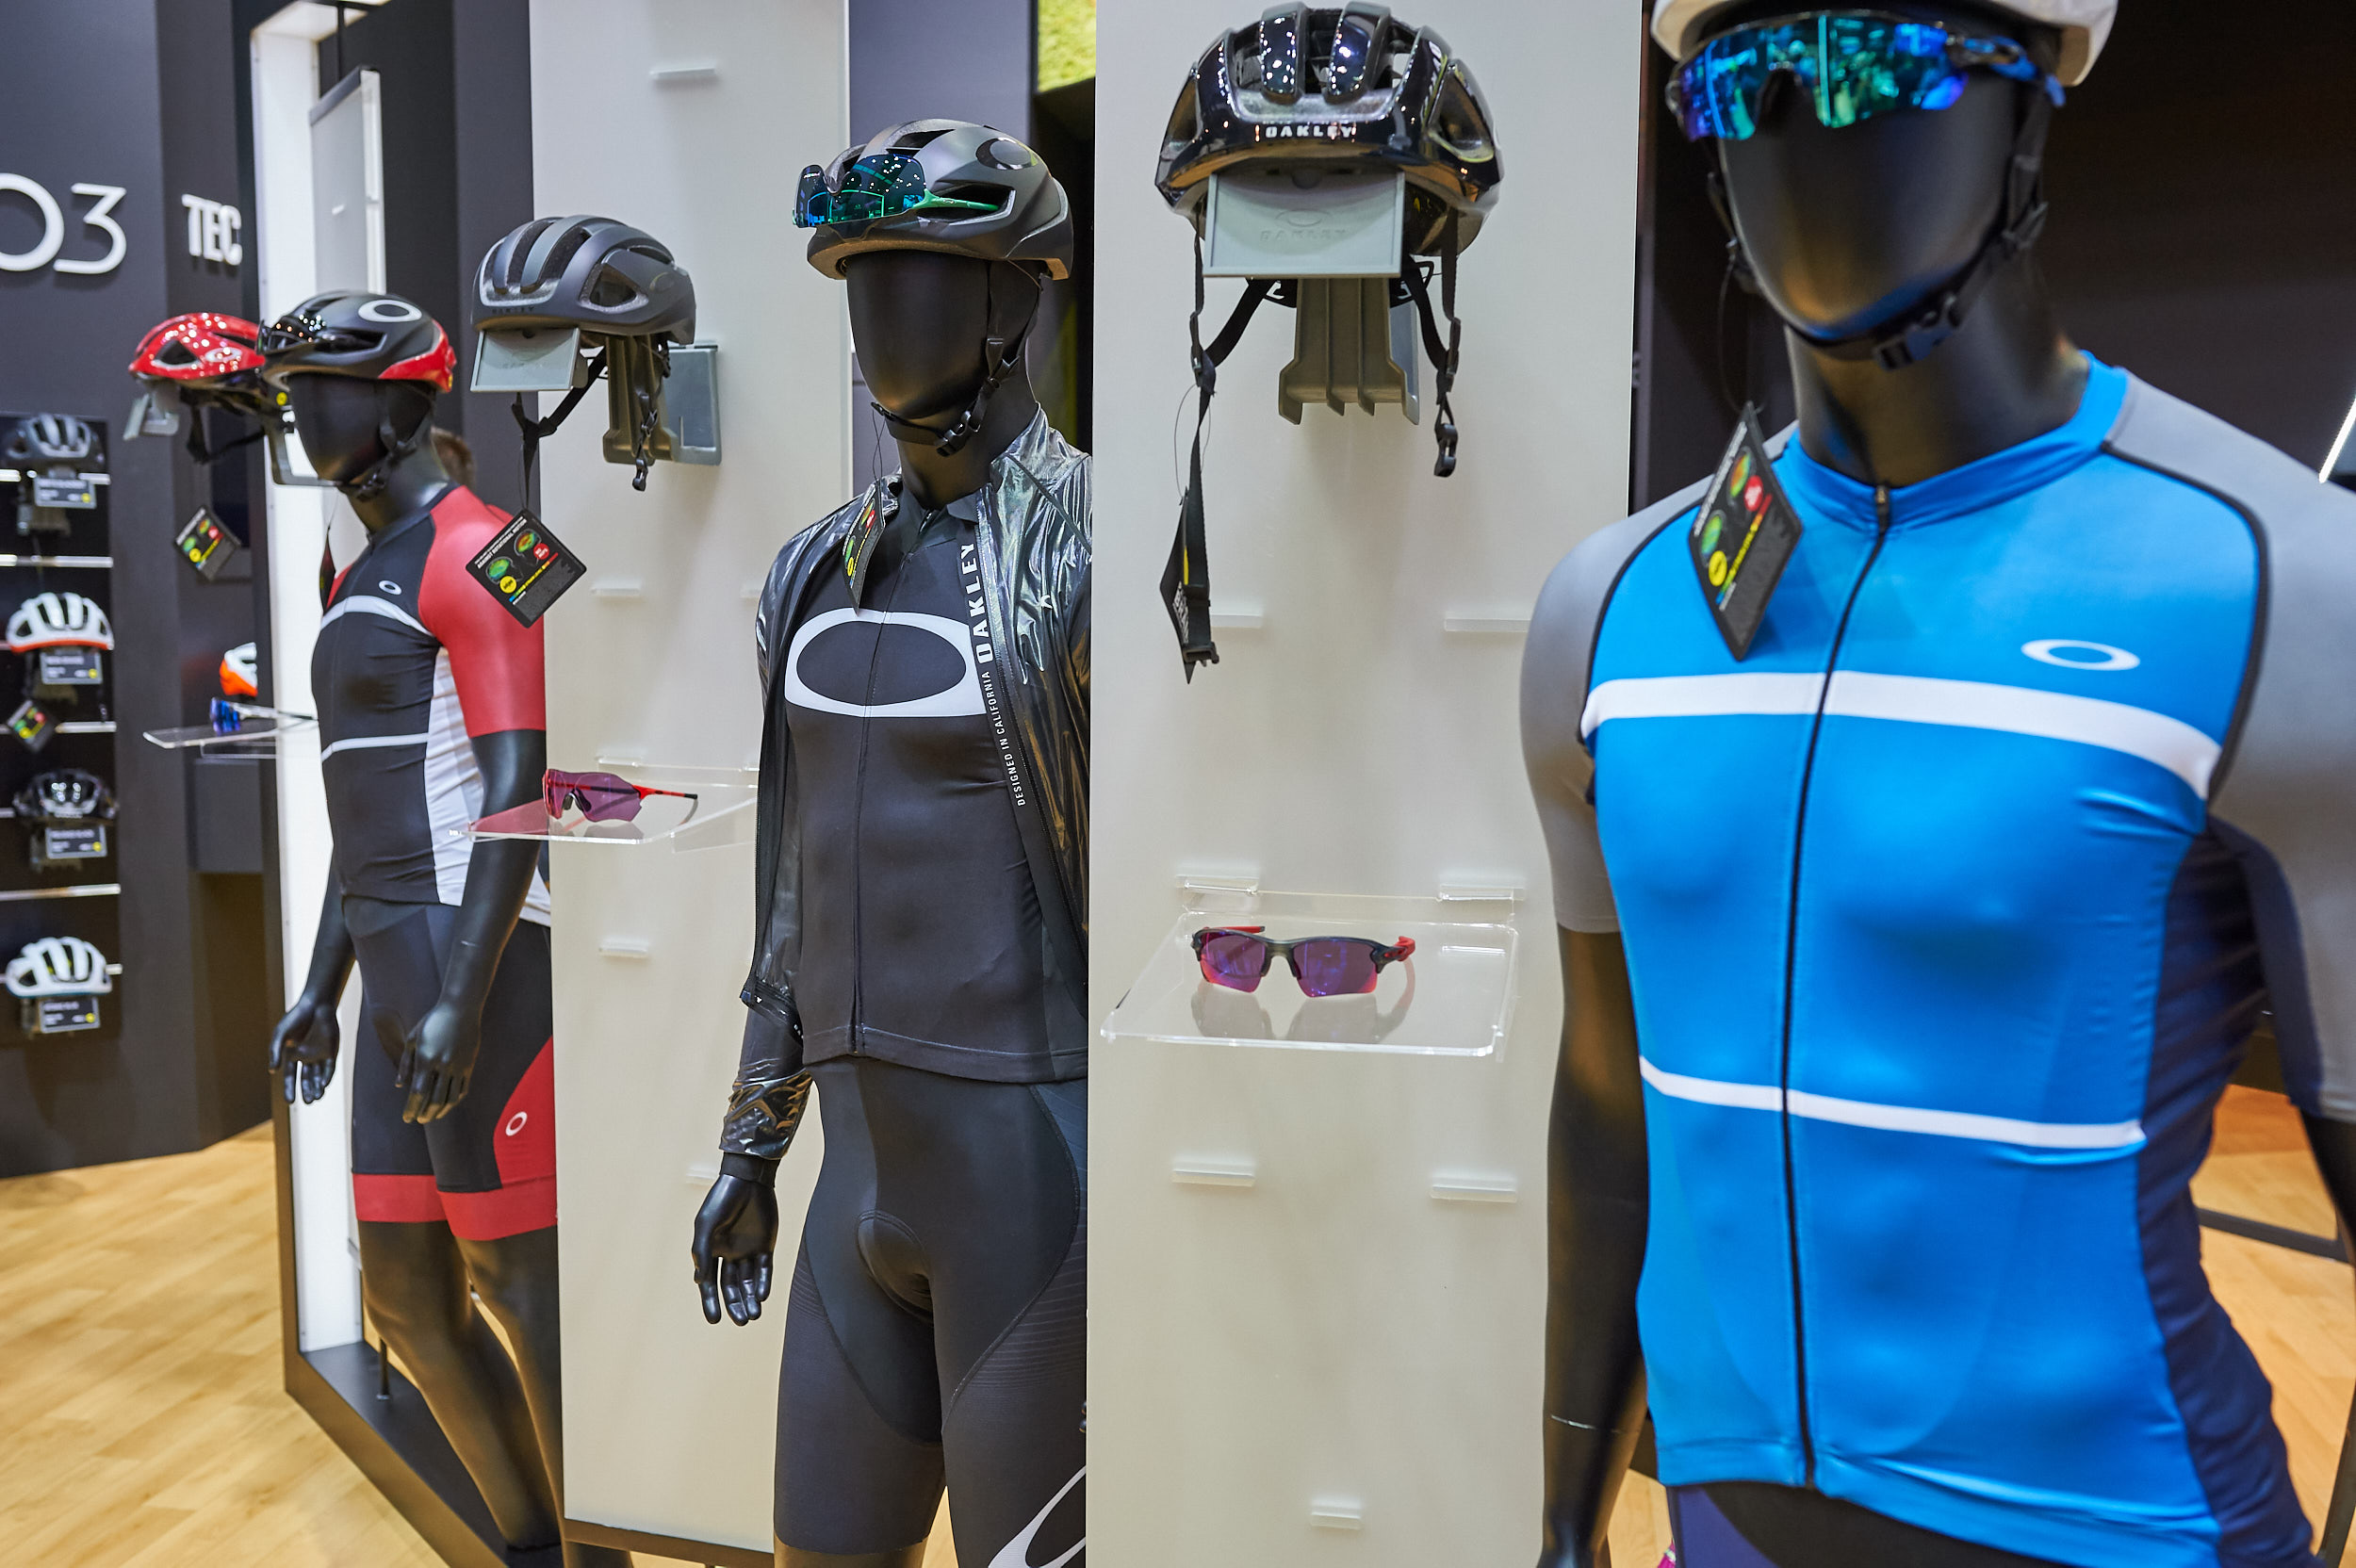 Überraschend: Oakley ergänzt das bewährte Brillenangebot für Radfahrer mit aerodynamischen Helmen und einer ebenso windschlüpfrigen Bekleidungskollektion. Mit an Bord bei der Entwicklung: Frodo (nicht der Hobbit) und BioRacer Speedwear.